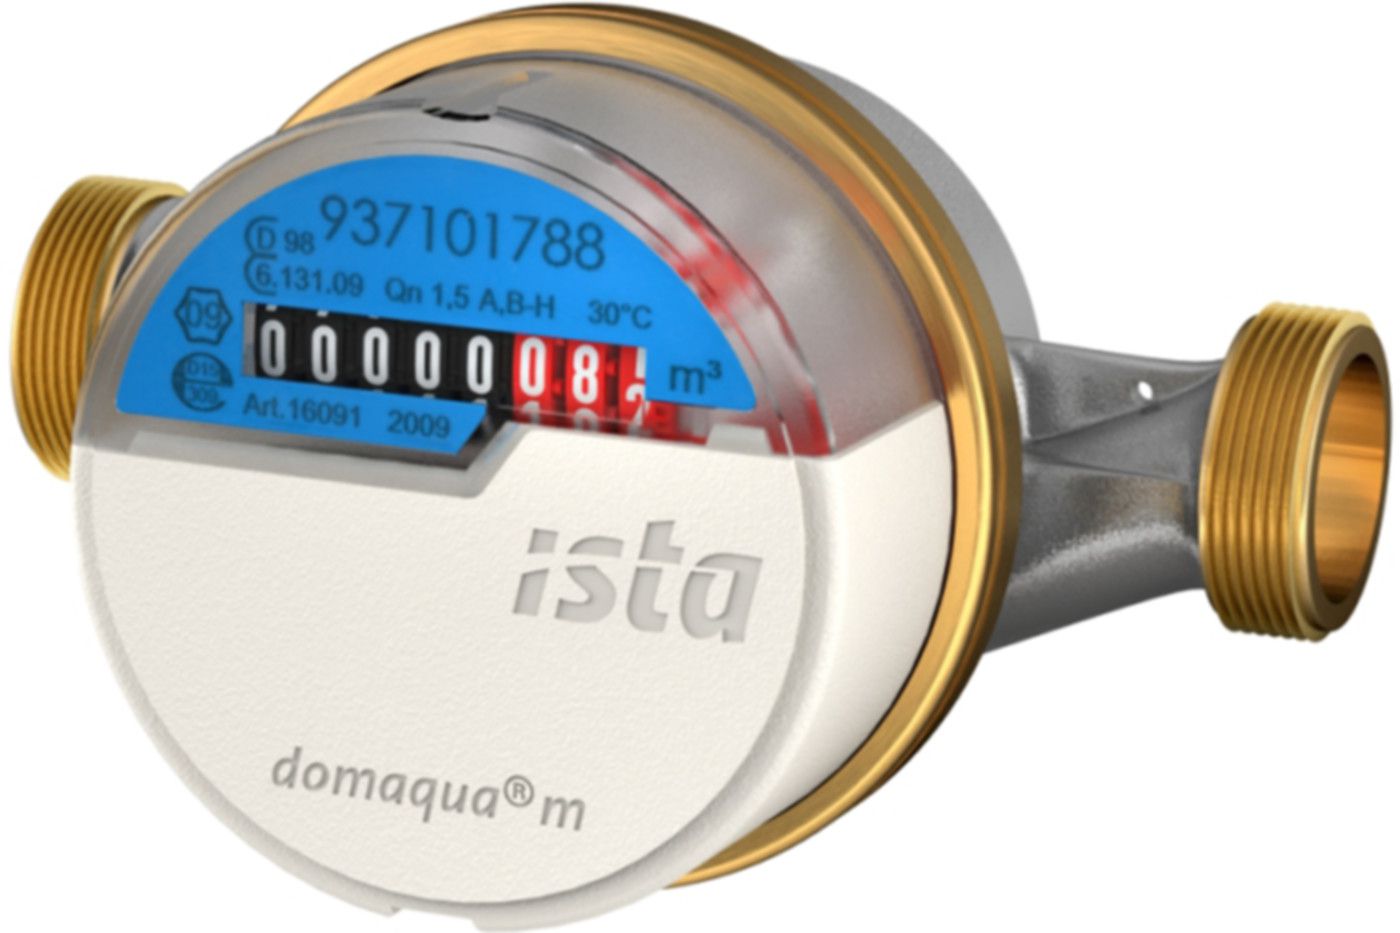 Aufputzzähler Domaqua m DN 15 1/2" G 3/4" - 130 mm kalt 2.5 m3/h  16092 - ISTA - Wärme- / Wasserzähler